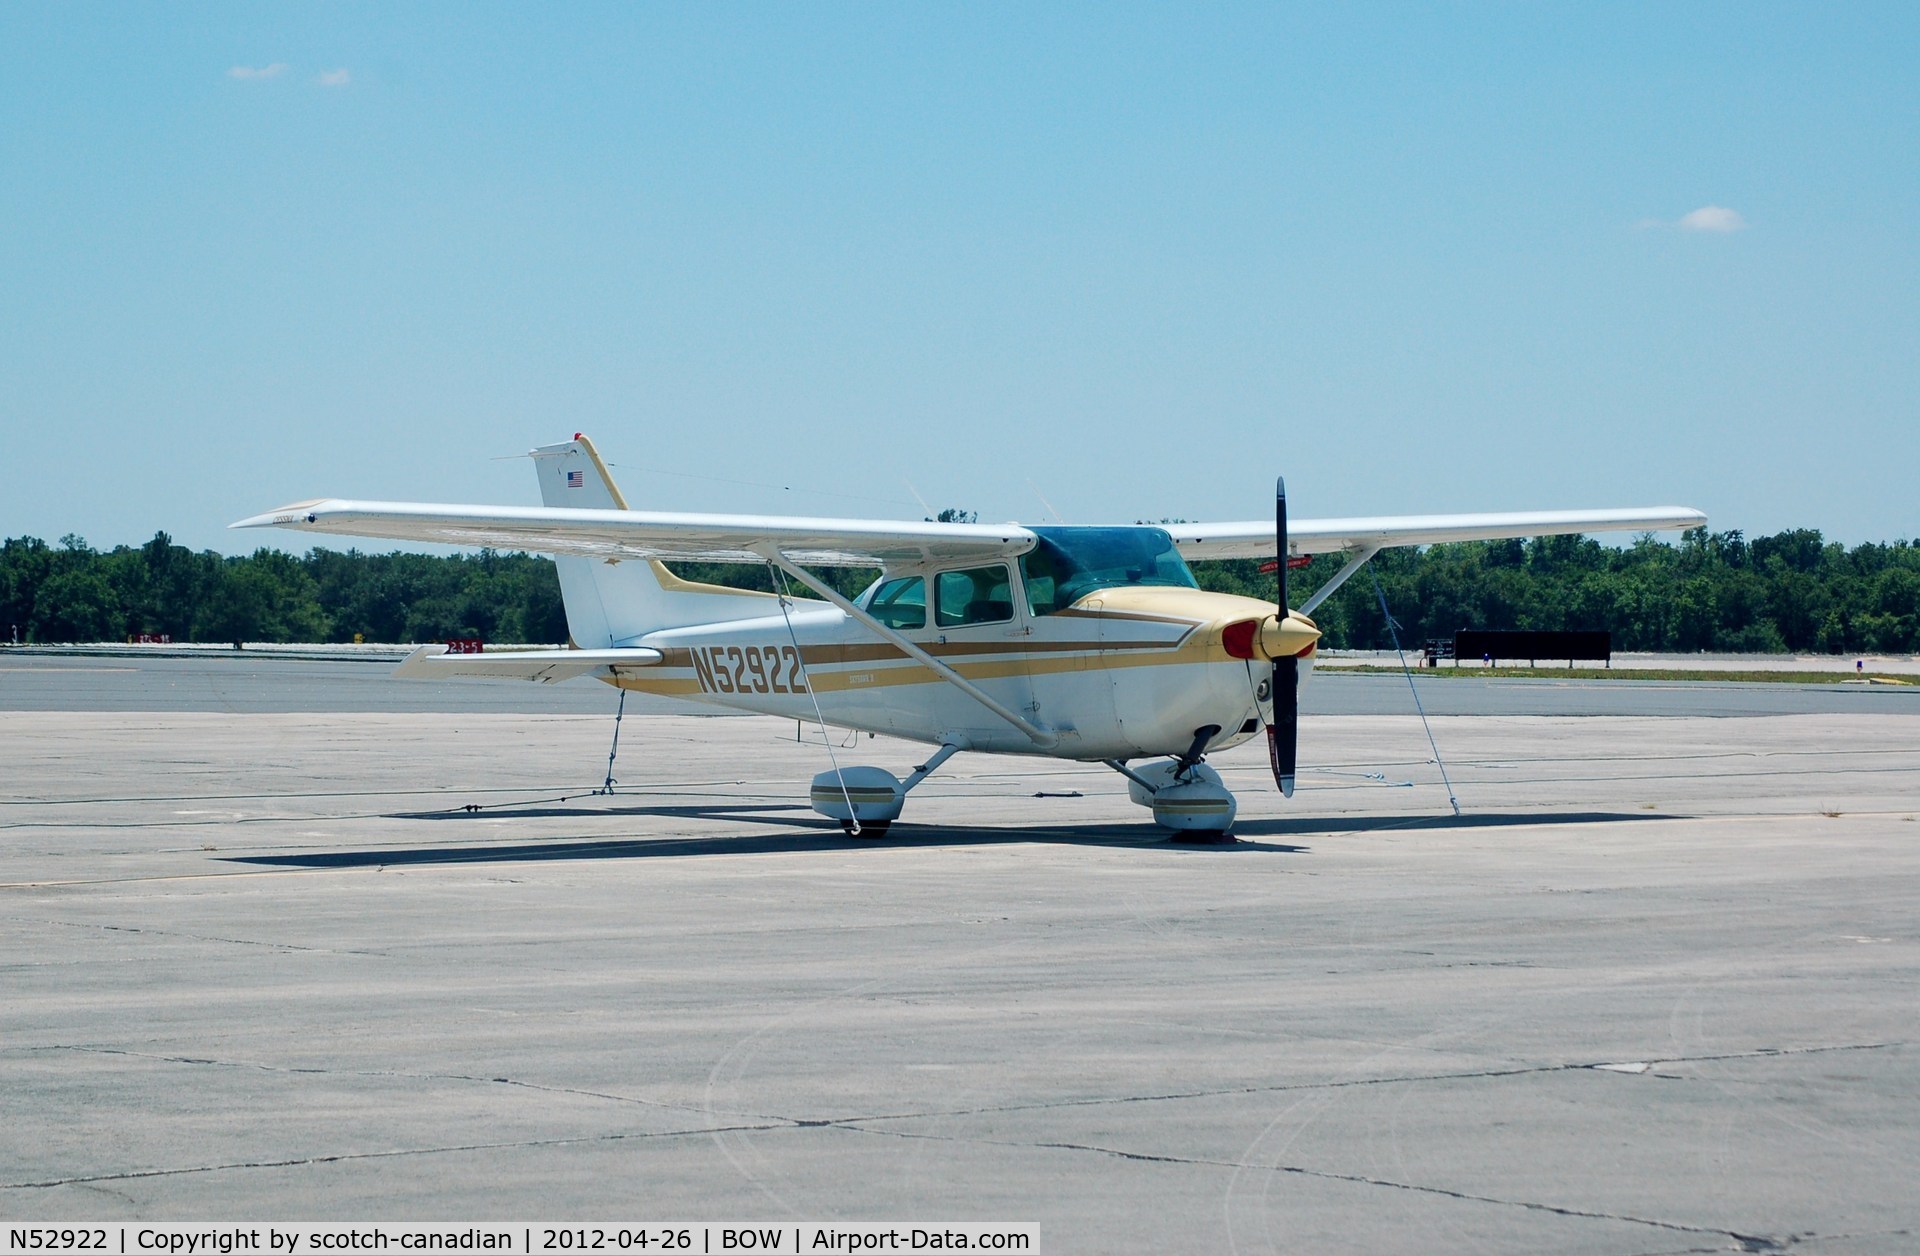 N52922, 1981 Cessna 172P C/N 17274635, 1981 Cessna 172P N52922 at Bartow Municipal Airport, Bartow, FL